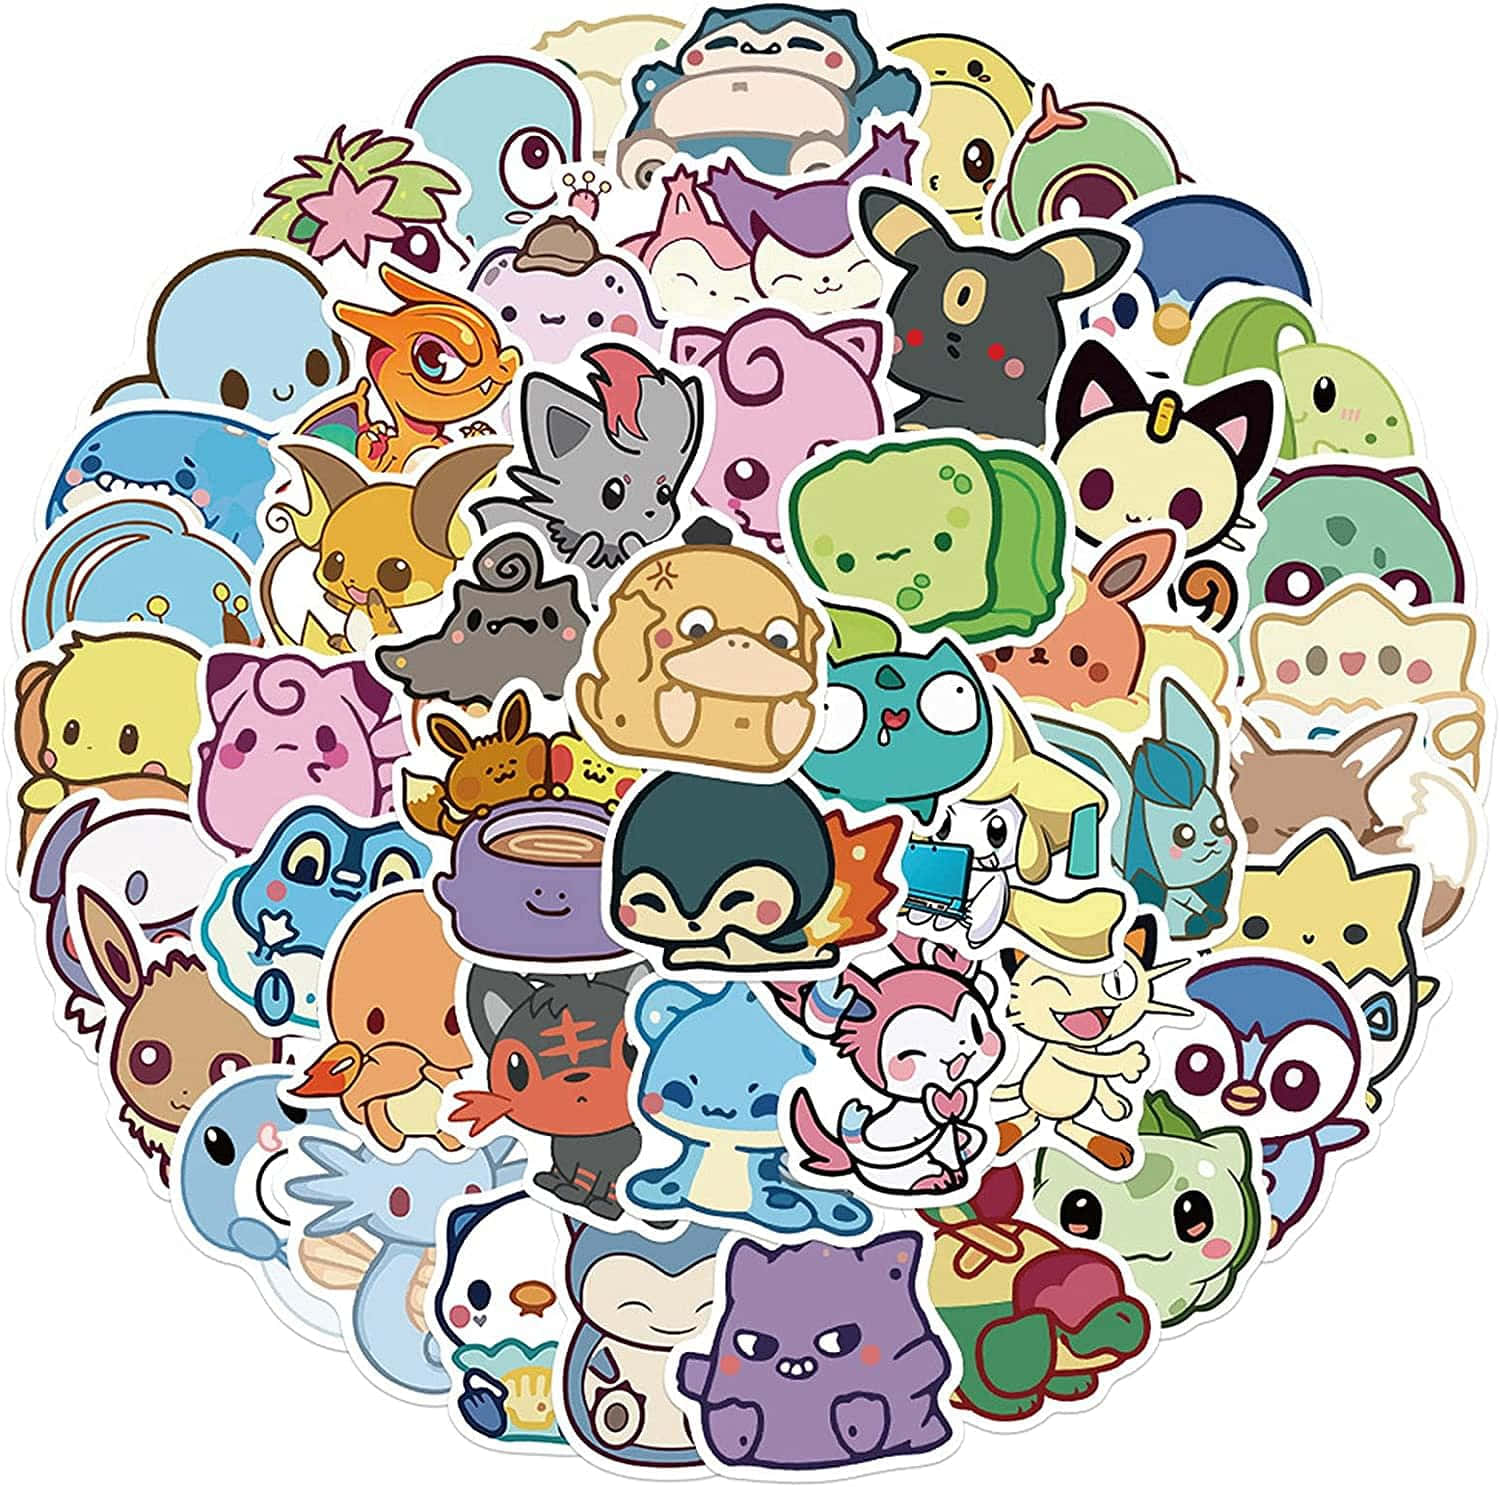 Coleccióncolorida De Pegatinas De Pokémon Fondo de pantalla